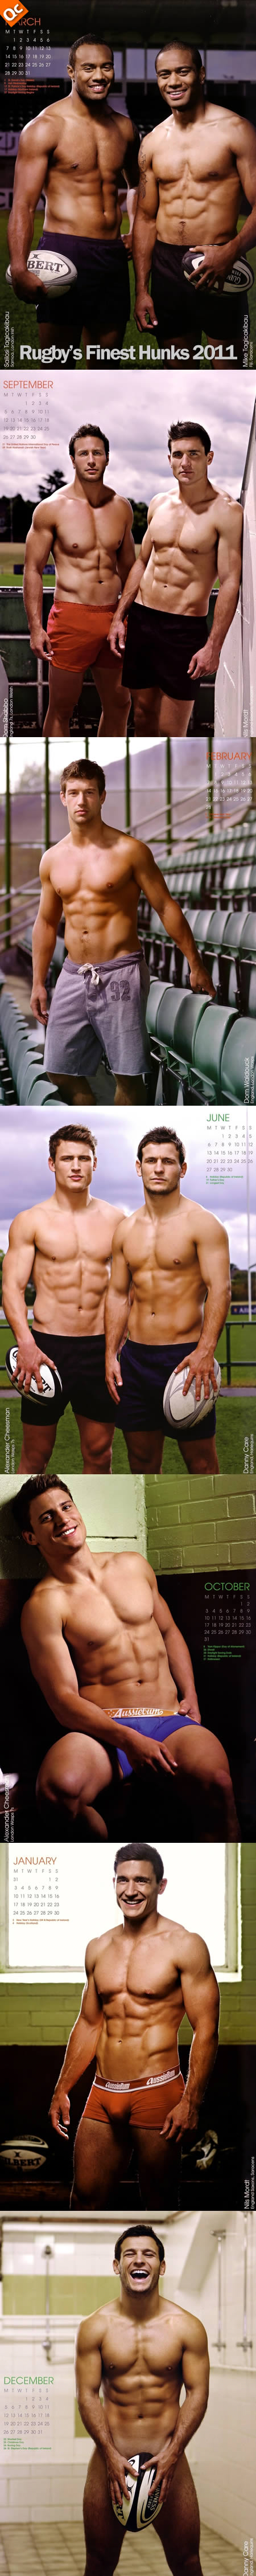 re_calendario_rugby211.jpg